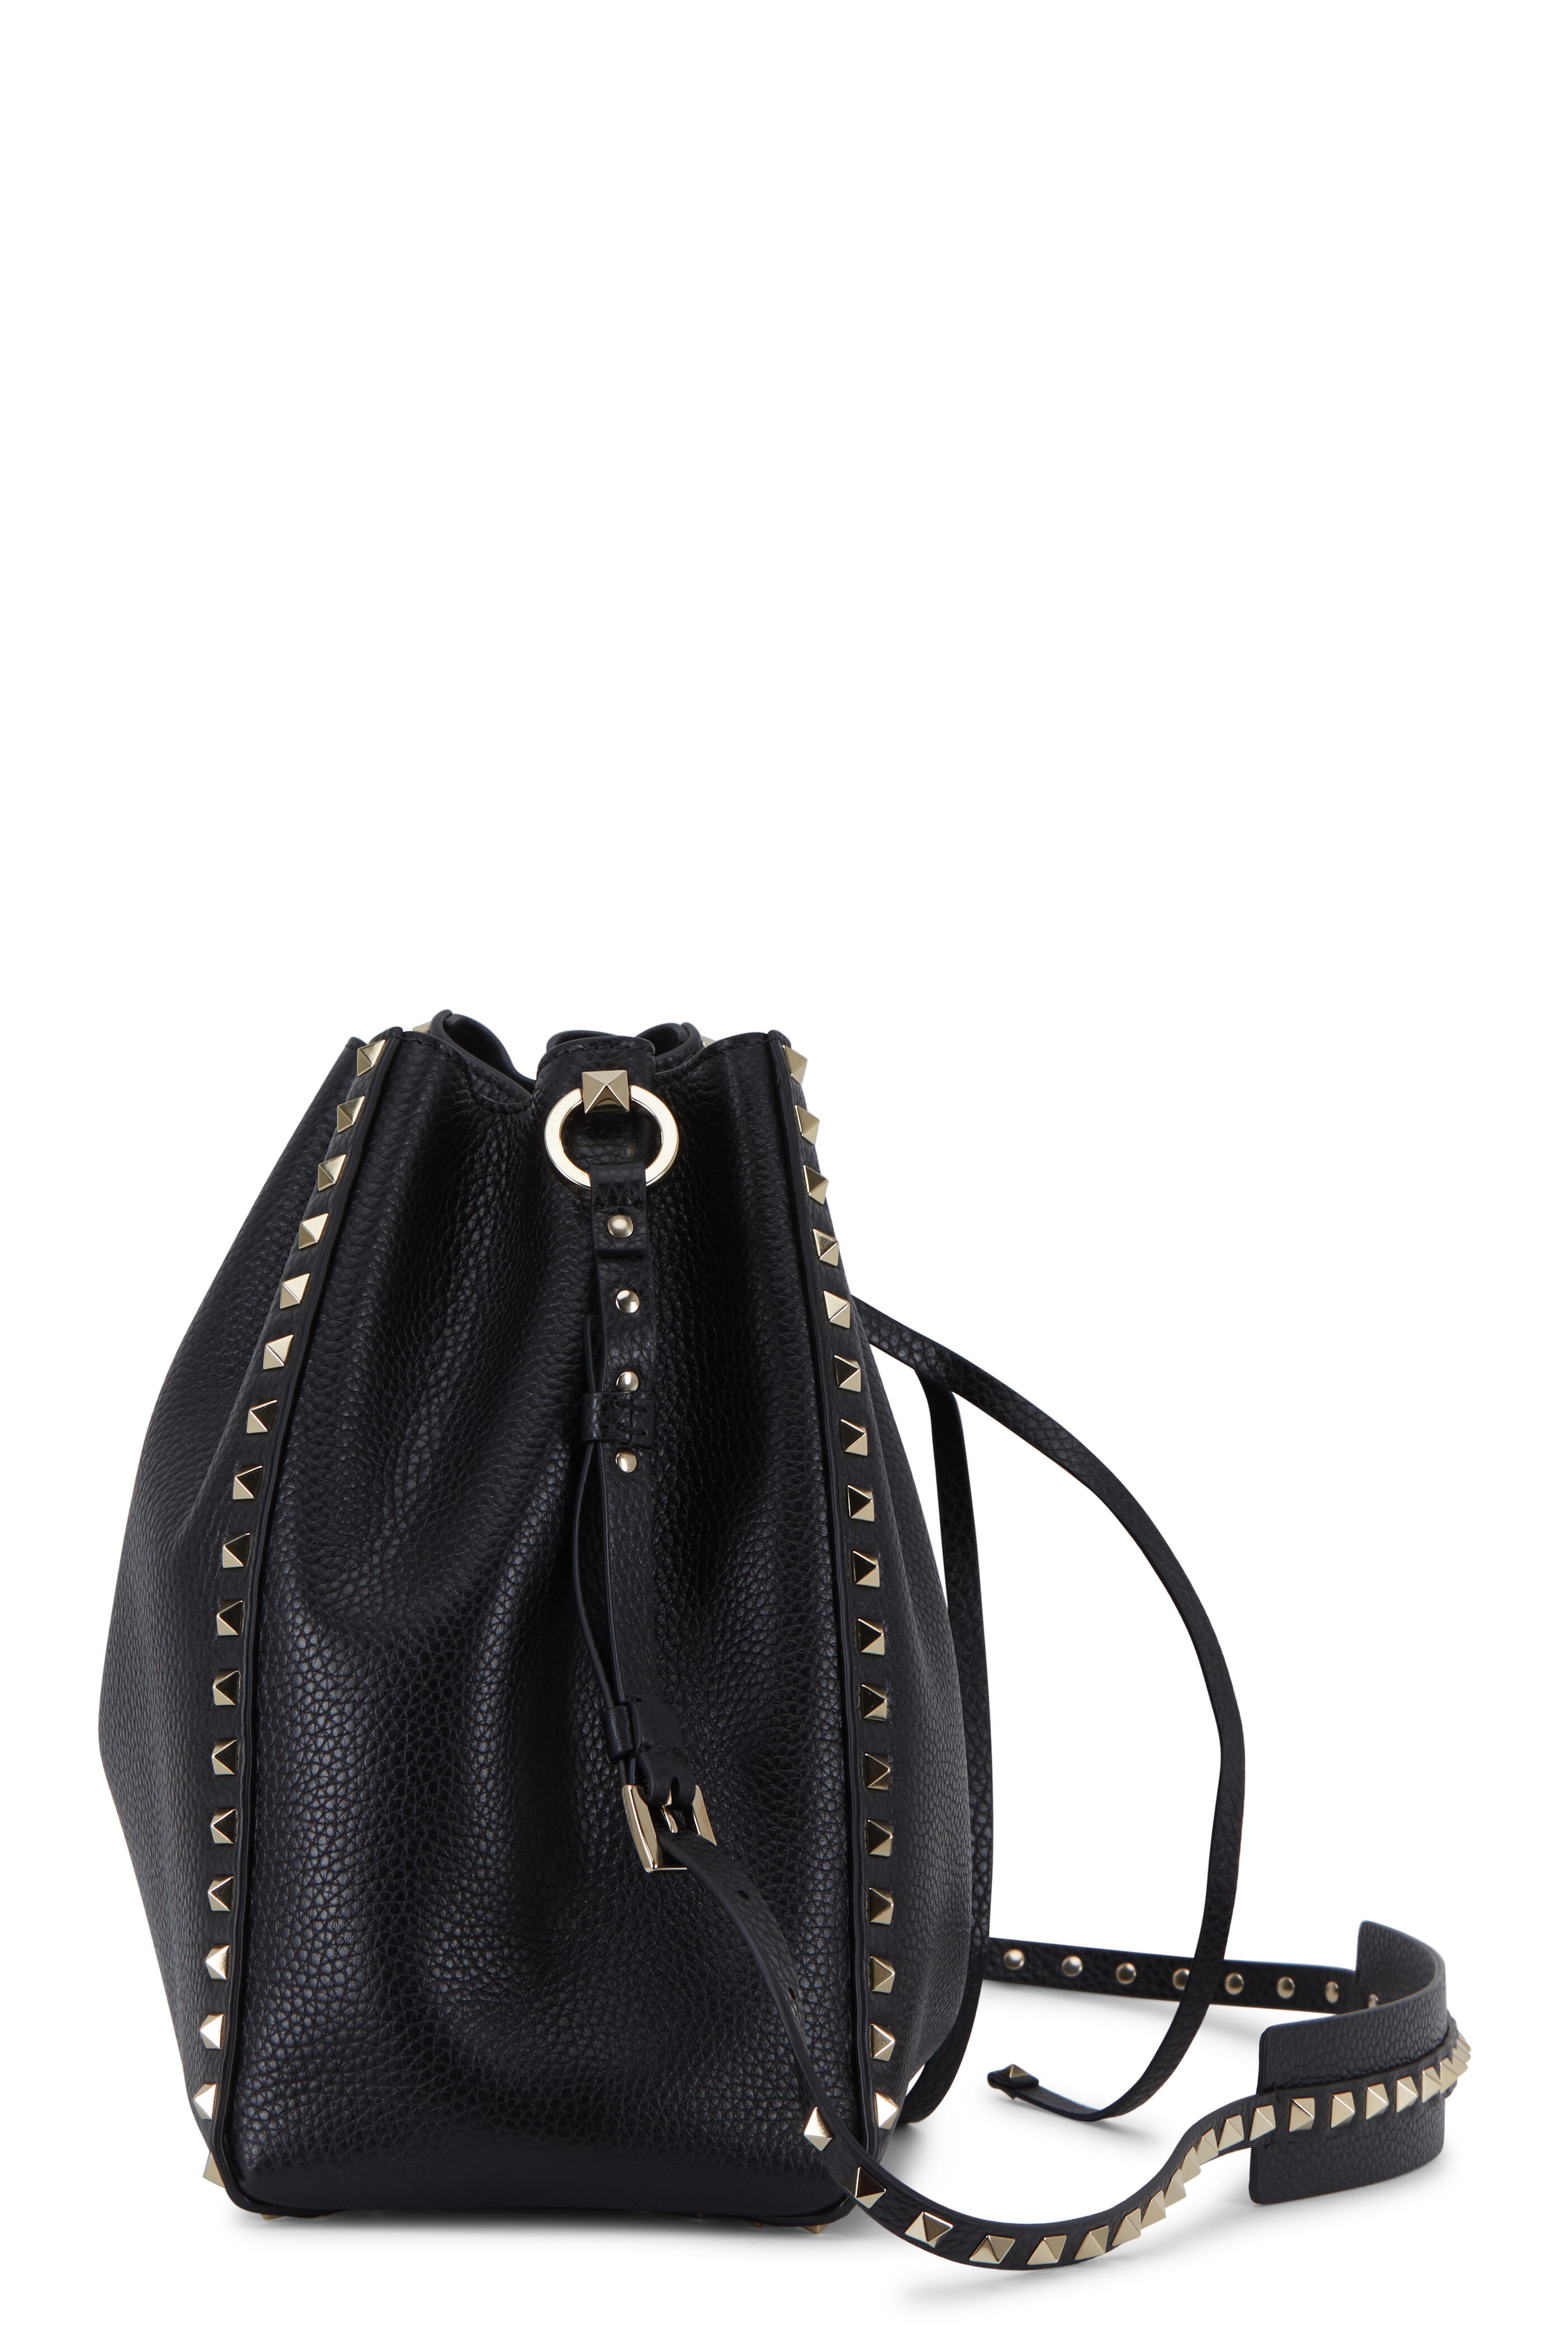 Valentino Rockstud Black Pebbled Leather Large Bucket Bag